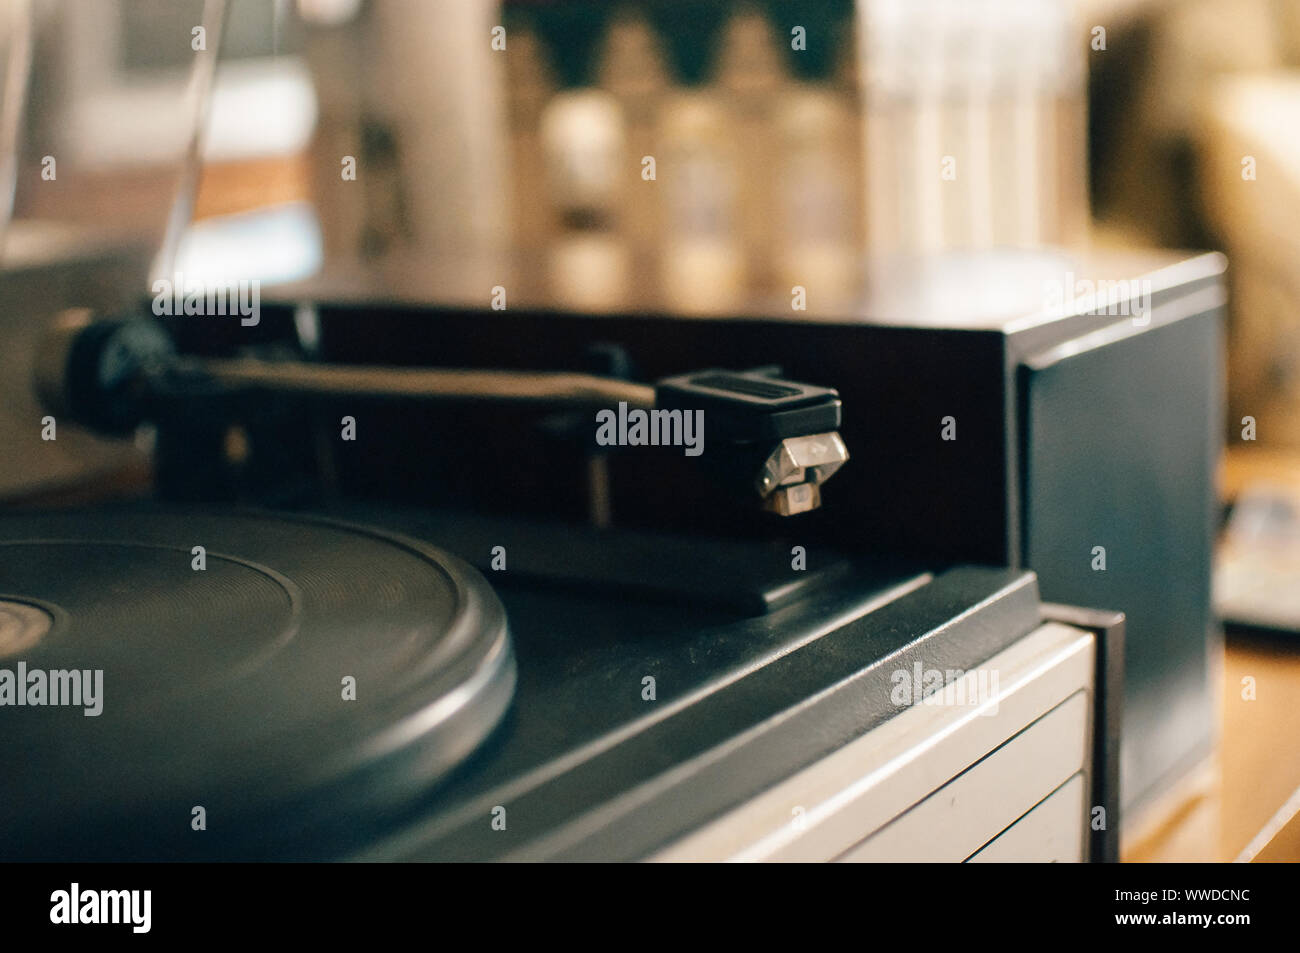 Vinyl record player sur un fond coucher de soleil sur la ville lumière. La technologie audio pour DJ de mélanger et jouer de la musique. Disque vinyle noir. Viny vintage 1980 Banque D'Images